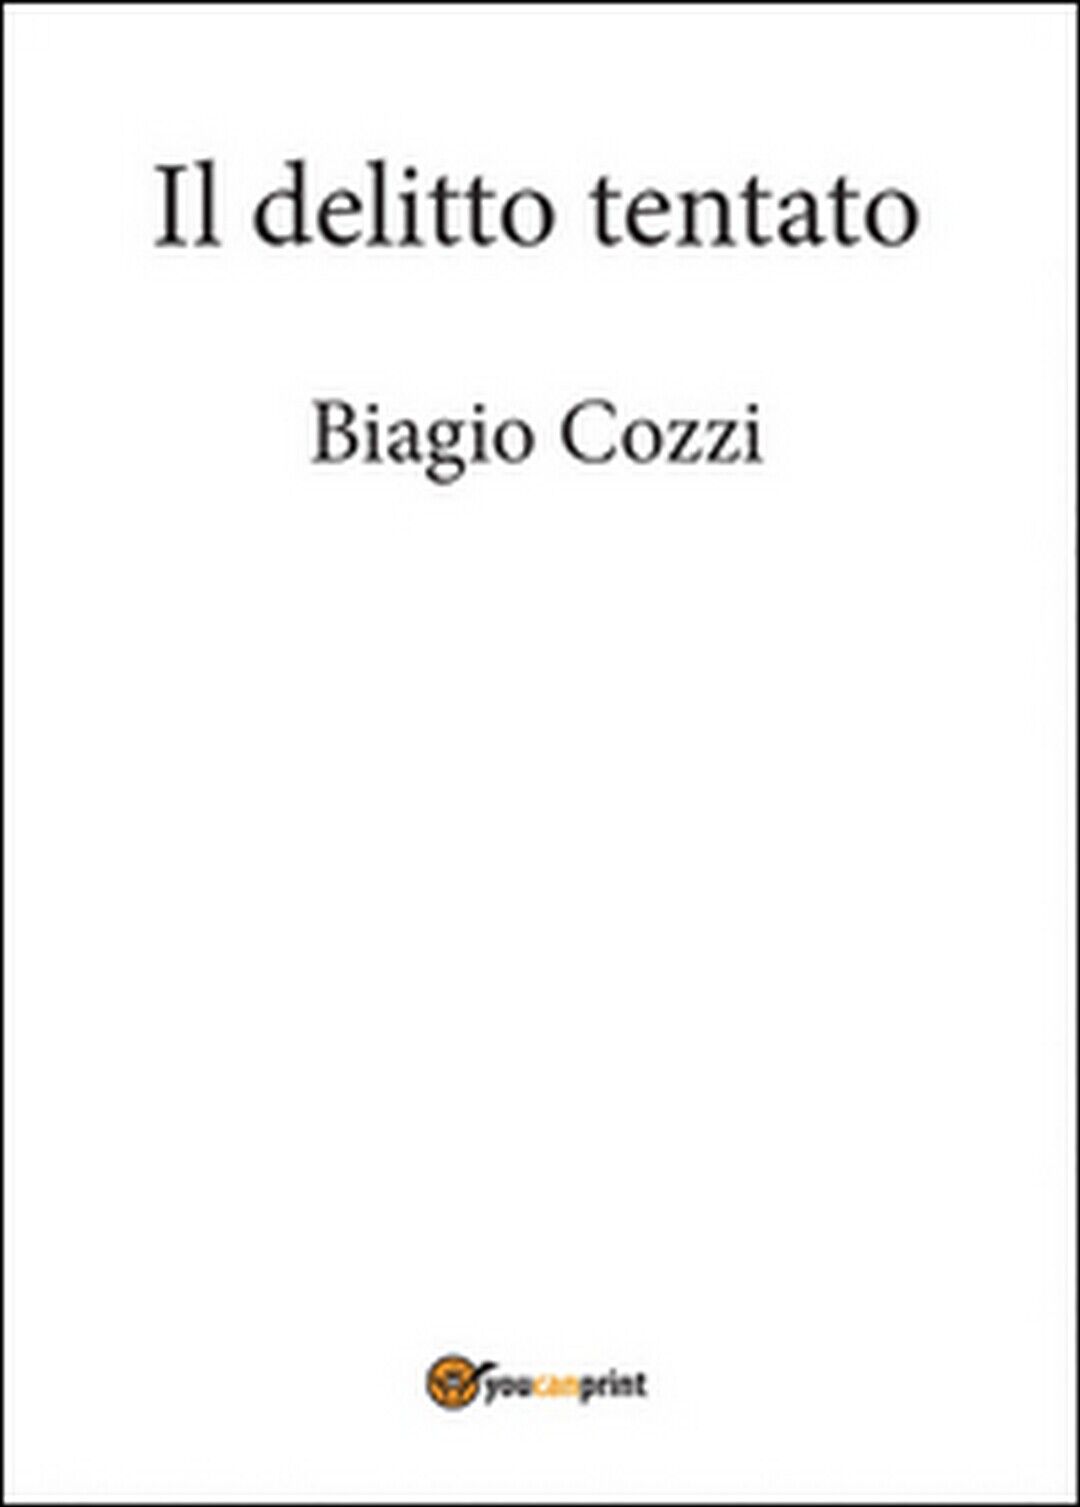 Il delitto tentato,  di Biagio Cozzi,  2014,  Youcanprint